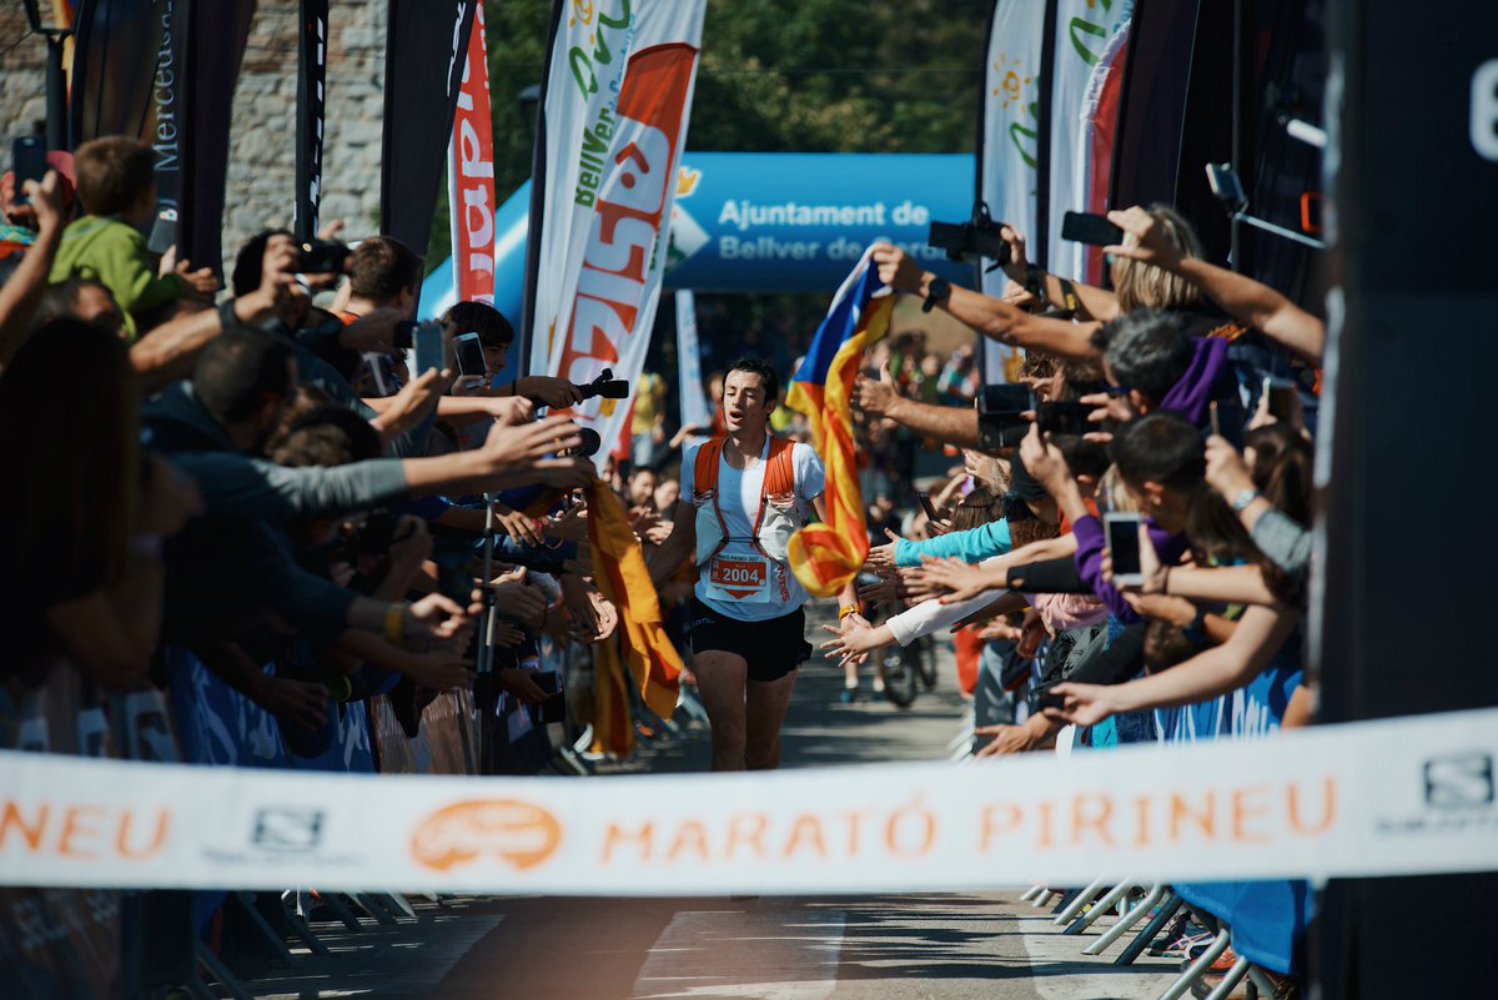 Kilian Jornet guanya la Marató Pirineu amb rècord